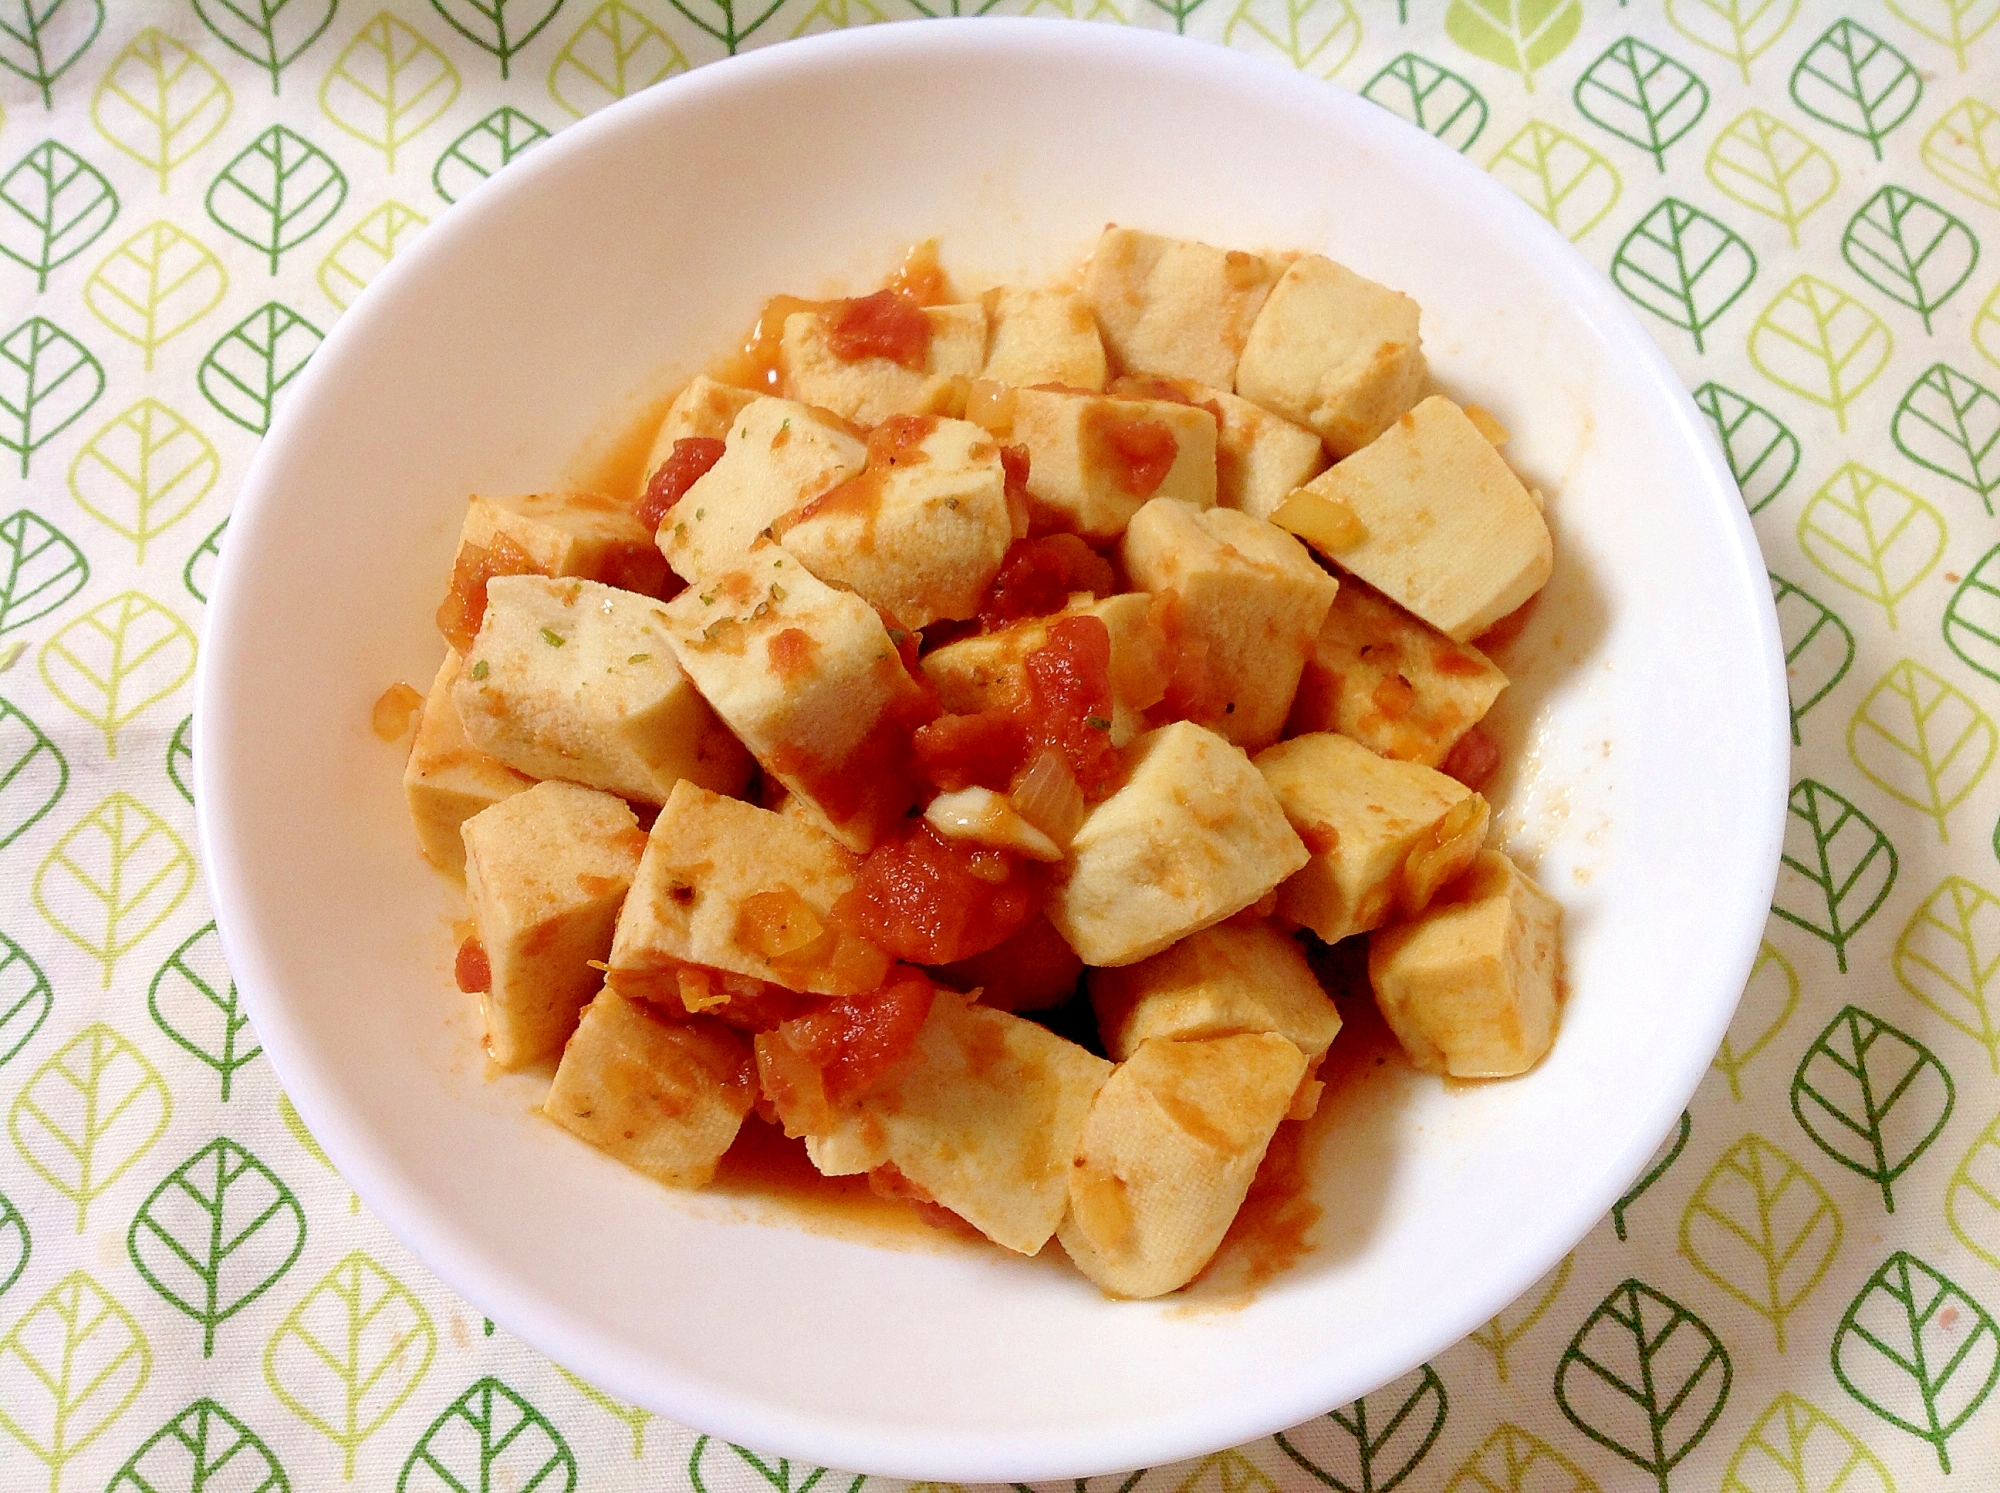 高野豆腐のトマトソース和え(o^^o)